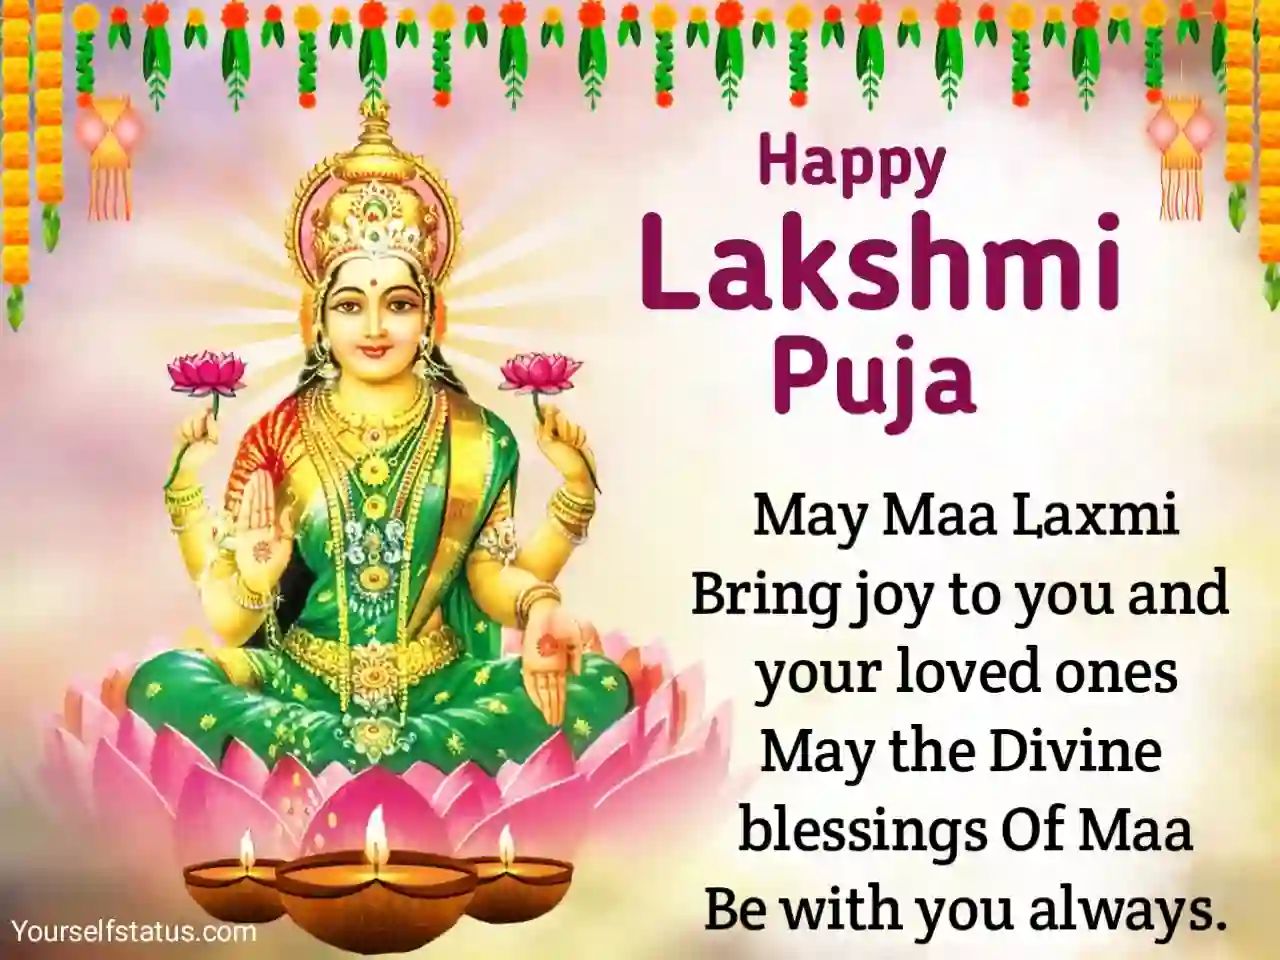 lakshmi puja wishes